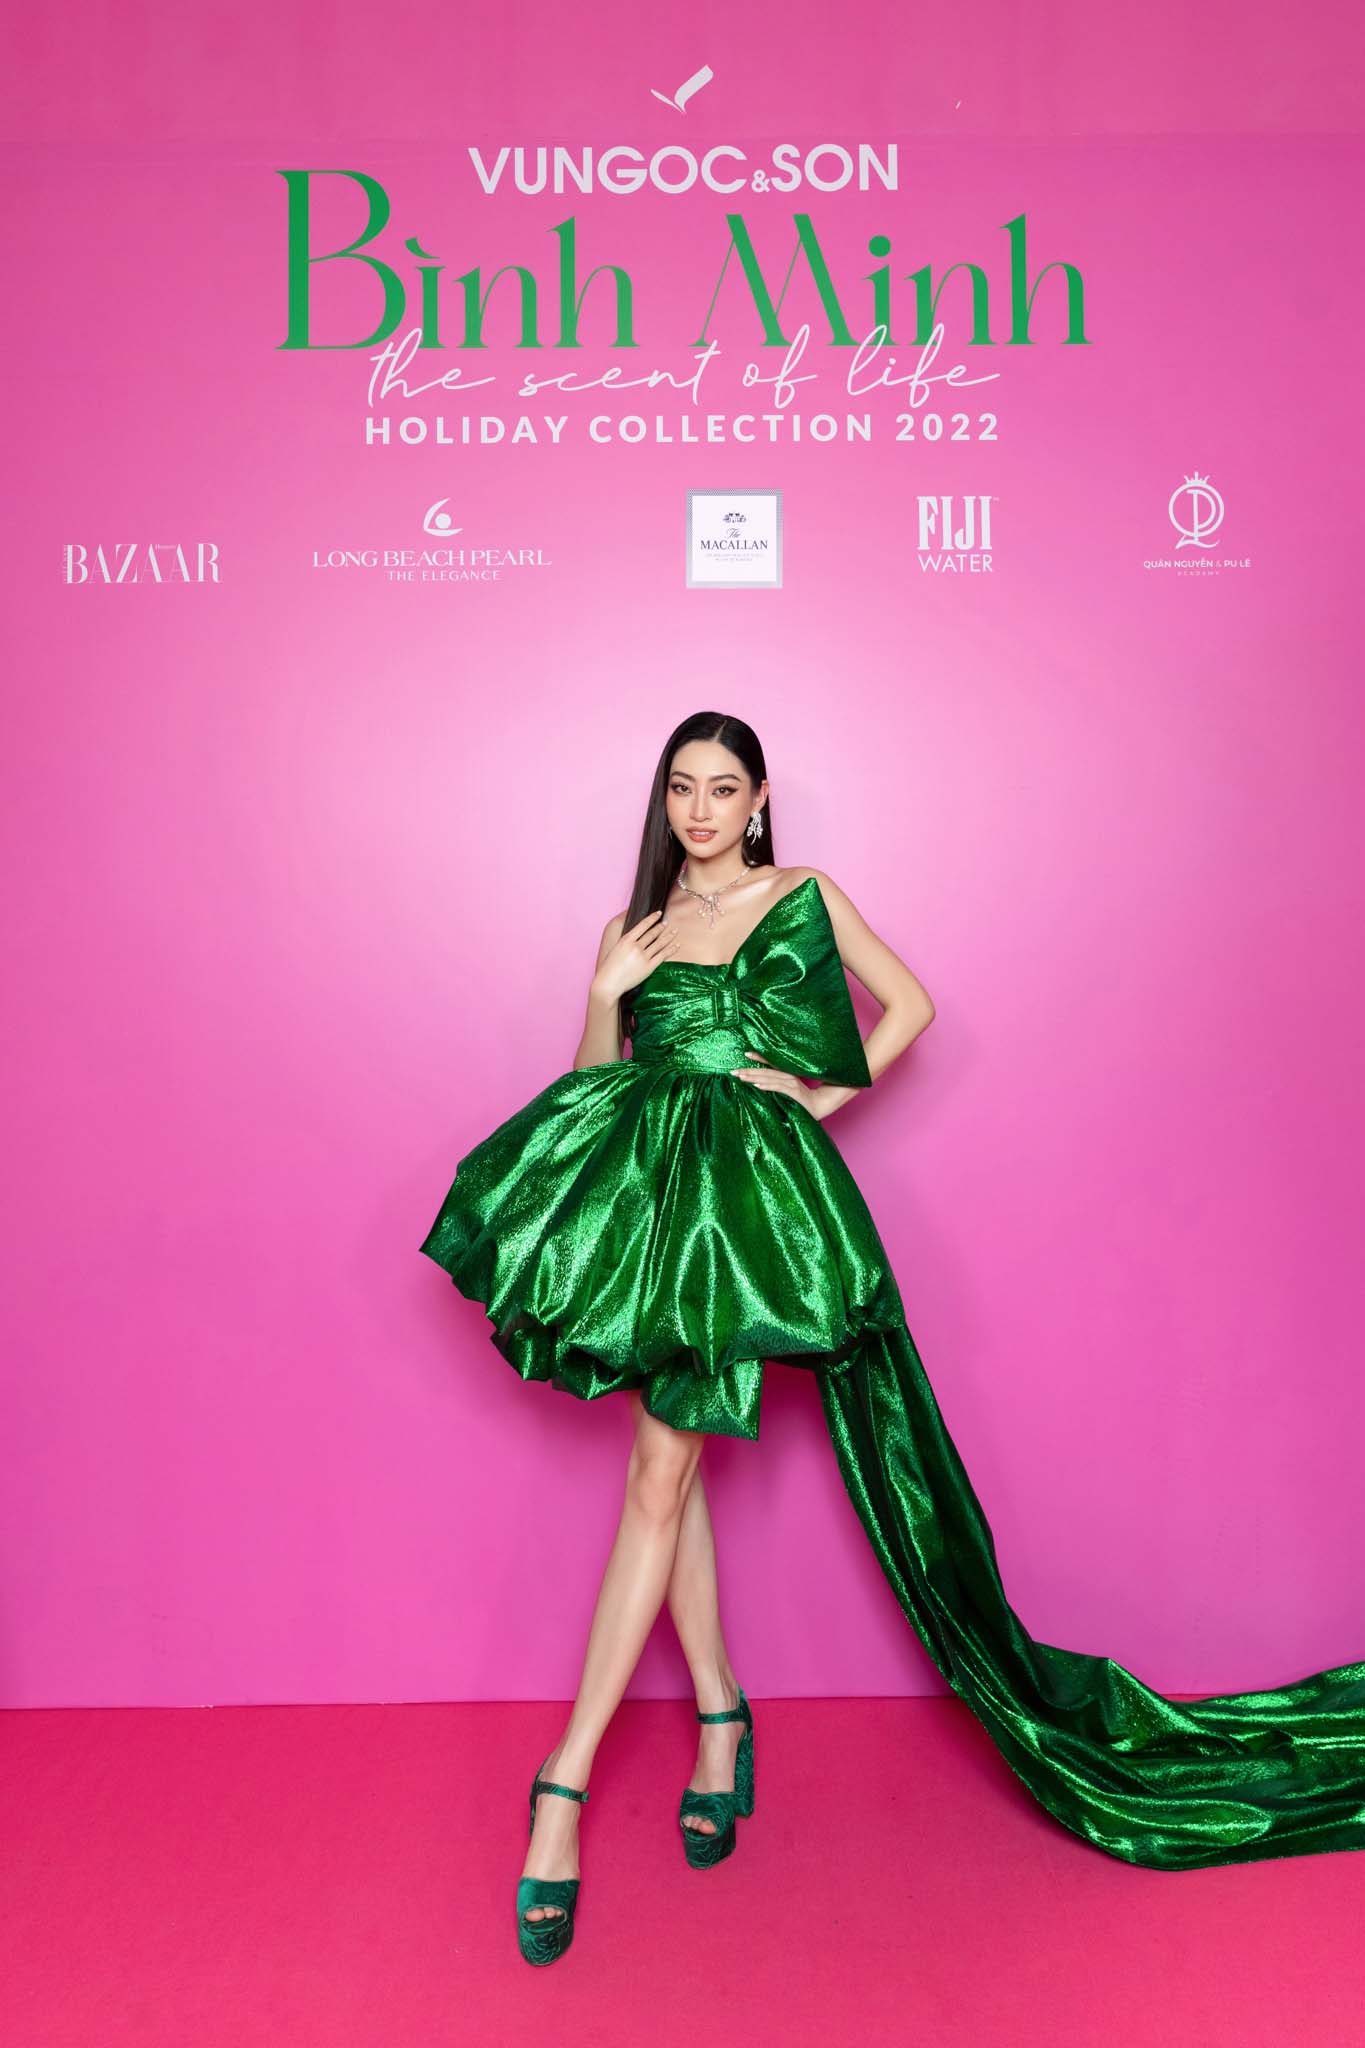 Hoa hậu Lương Thùy Linh bất ngờ hóa “món quà đáng yêu” khi diện thiết kế đầm dáng quả bí với chi tiết thắt nơ điệu đà. Phần tùng dài lấp lánh giúp cô thêm nổi bật trên thảm đỏ.